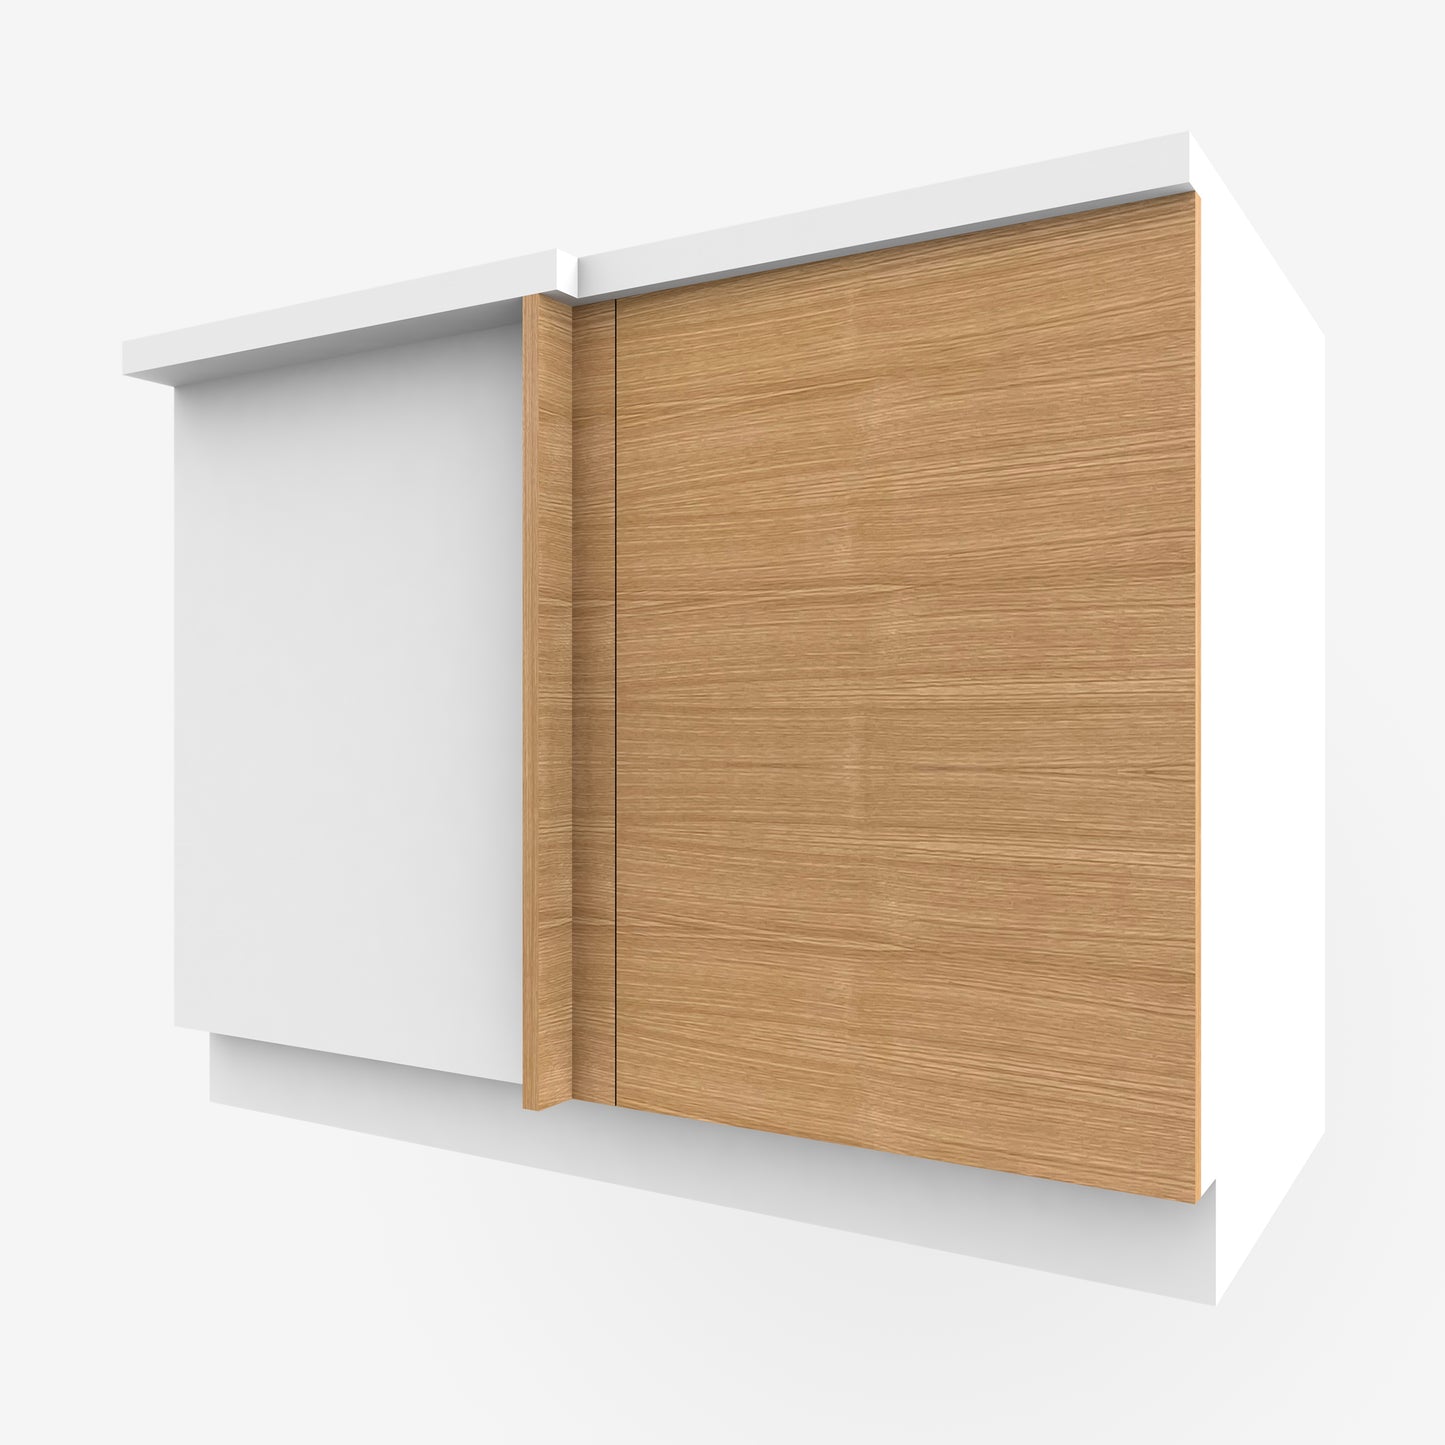 Rift White Oak Corner Cabinet Door for Sektion